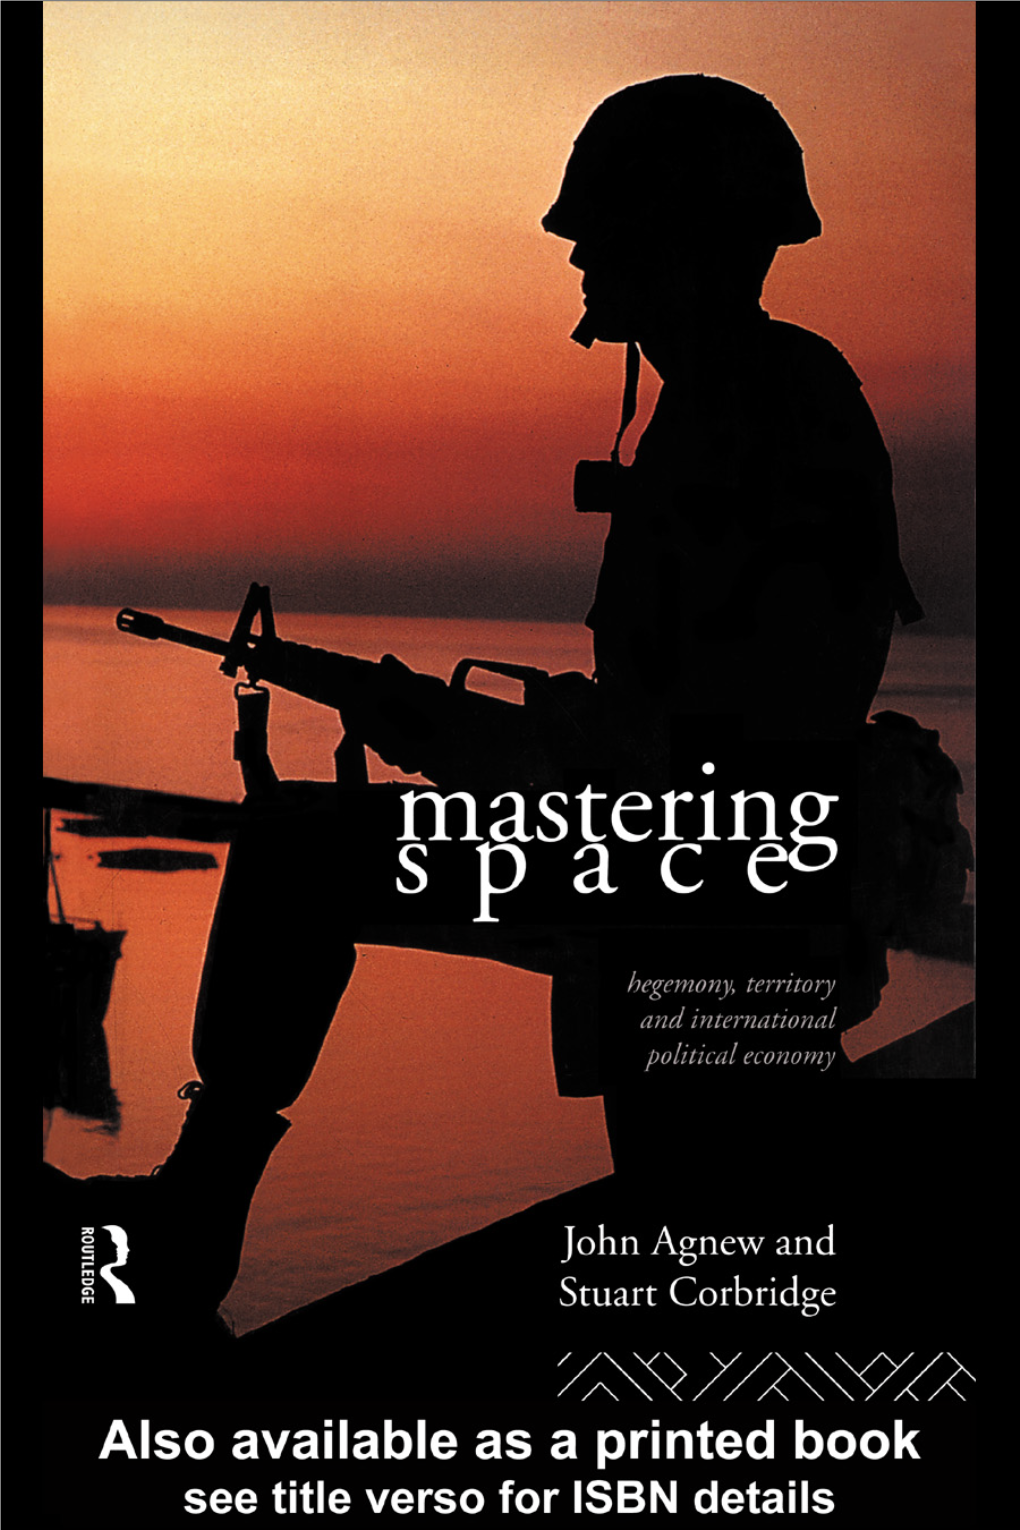 Mastering Space: Hegemony, Territory and International Political Economy/John Agnew and Stuart Corbridge